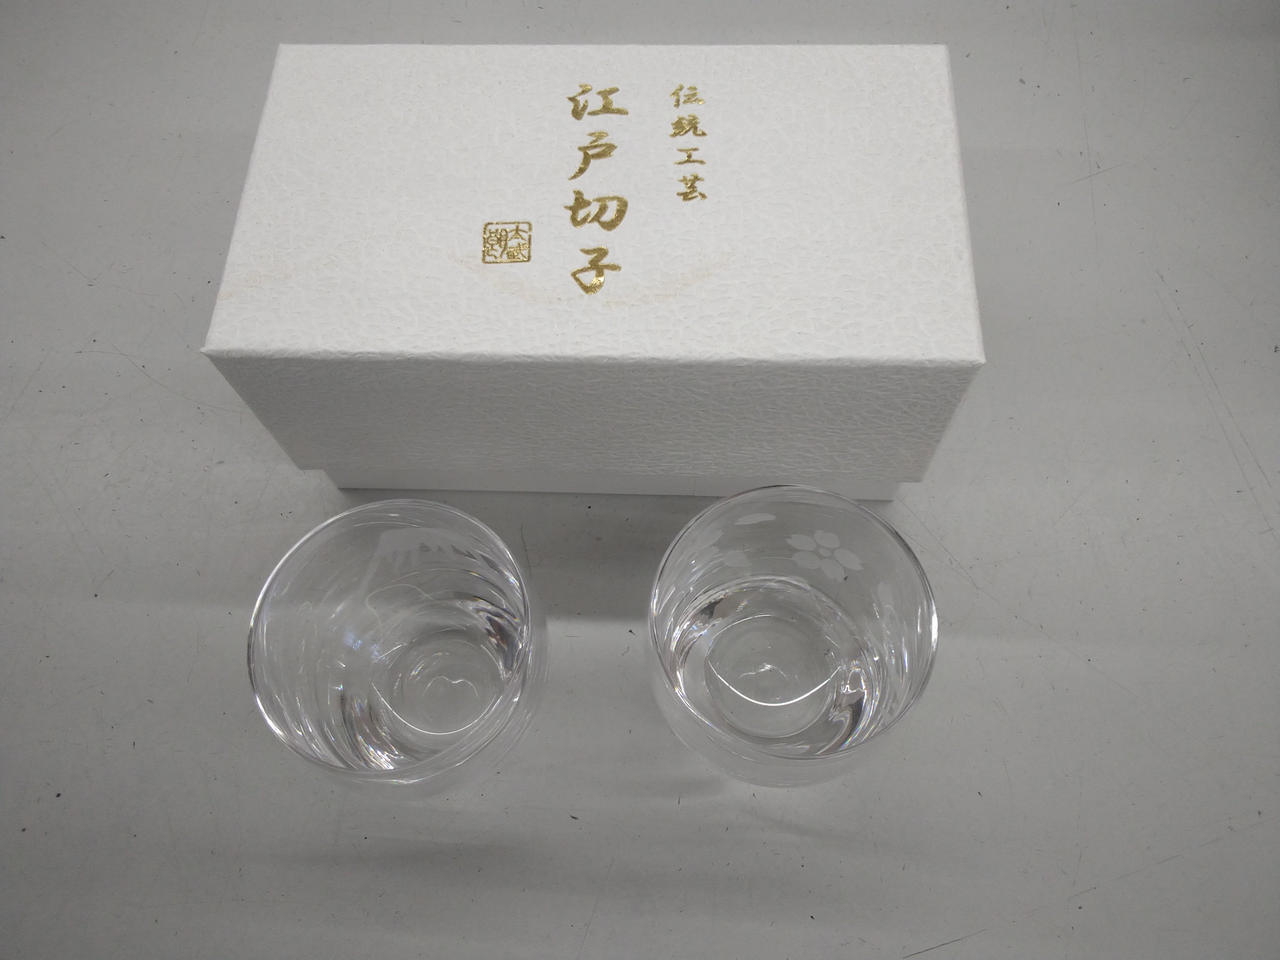 Sake vessel Electric Light Craft Edo Kiriko Cold Sake Pair Glass from Japan